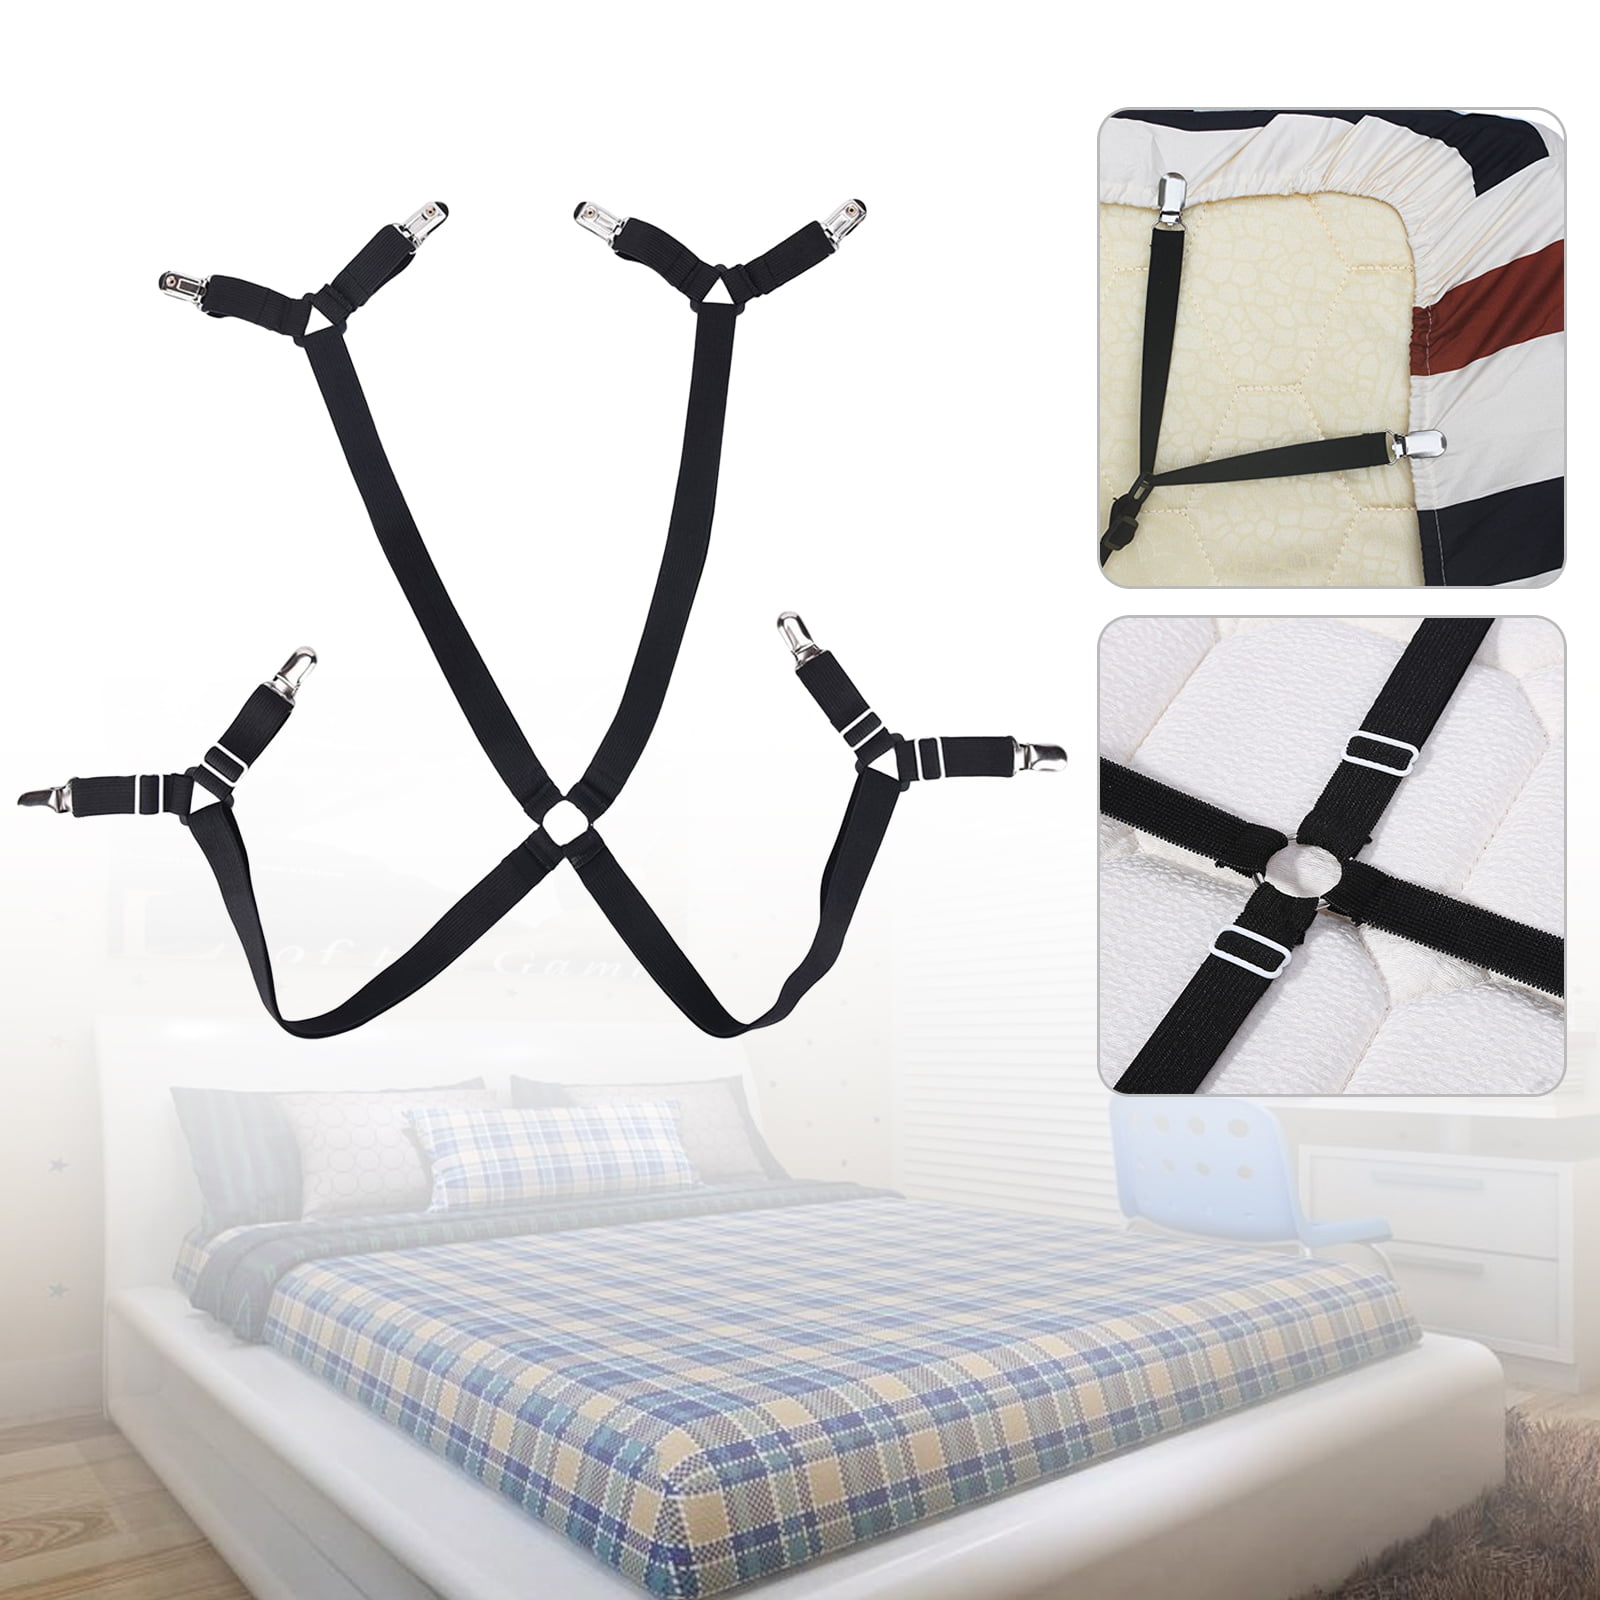 Bedsheets Black Acoser Bed Sheet Clips,Long Strap Fit for Adjustable Bed 